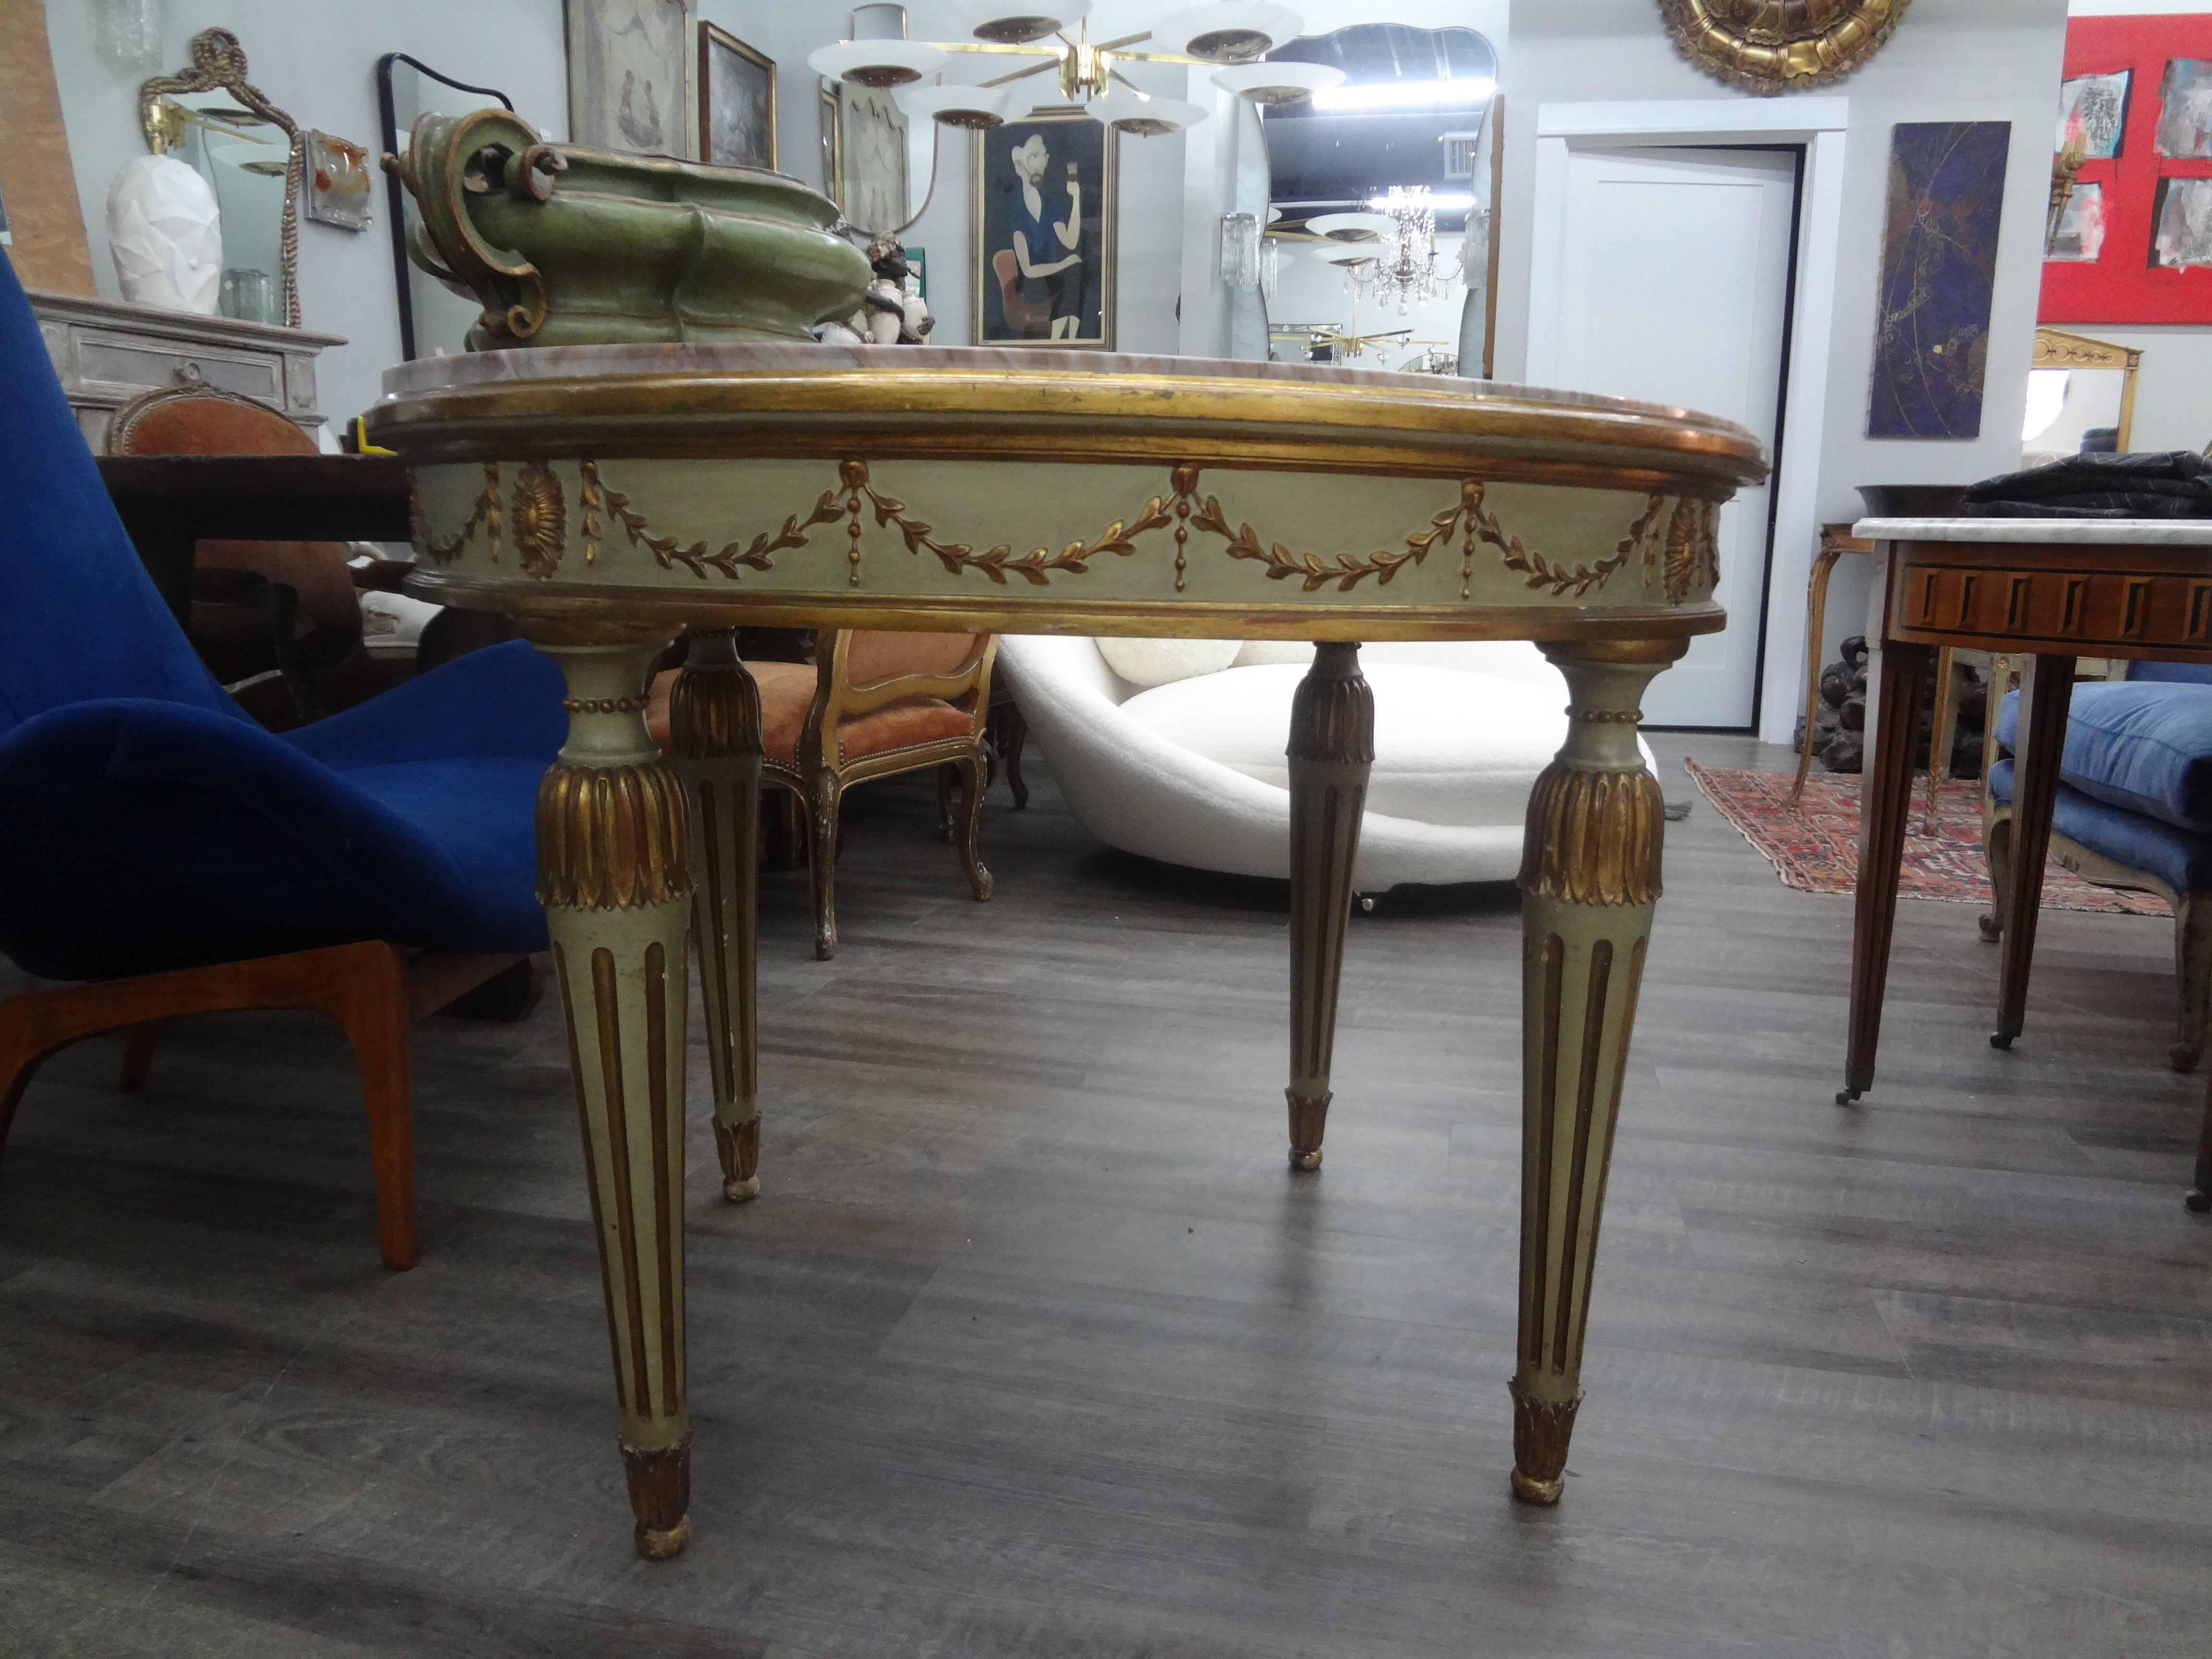 Italienischer Mitteltisch im neoklassischen Stil, bemalt und vergoldet.
Dieser vielseitige antike italienische Tisch aus bemaltem Goldholz kann als Mitteltisch, Esstisch oder Spieltisch verwendet werden. Die schöne originale Marmorplatte ist